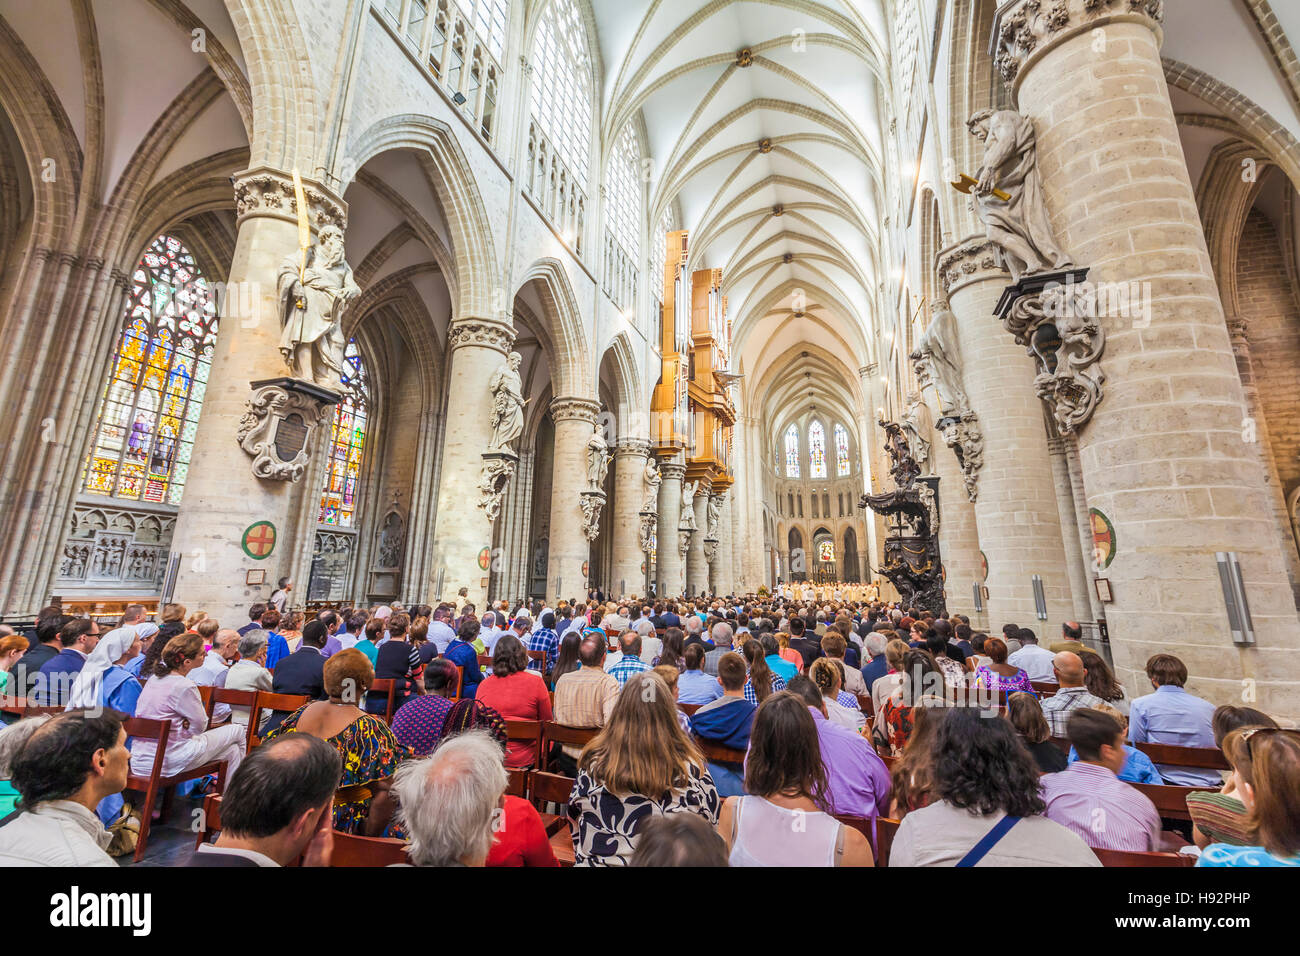 Le persone presso la CATTEDRALE DI ST. MICHAEL E ST. GUDULA, la cattedrale di SAINT-MICHEL di stile gotico, città, BRUXELLES, BELGIO Foto Stock